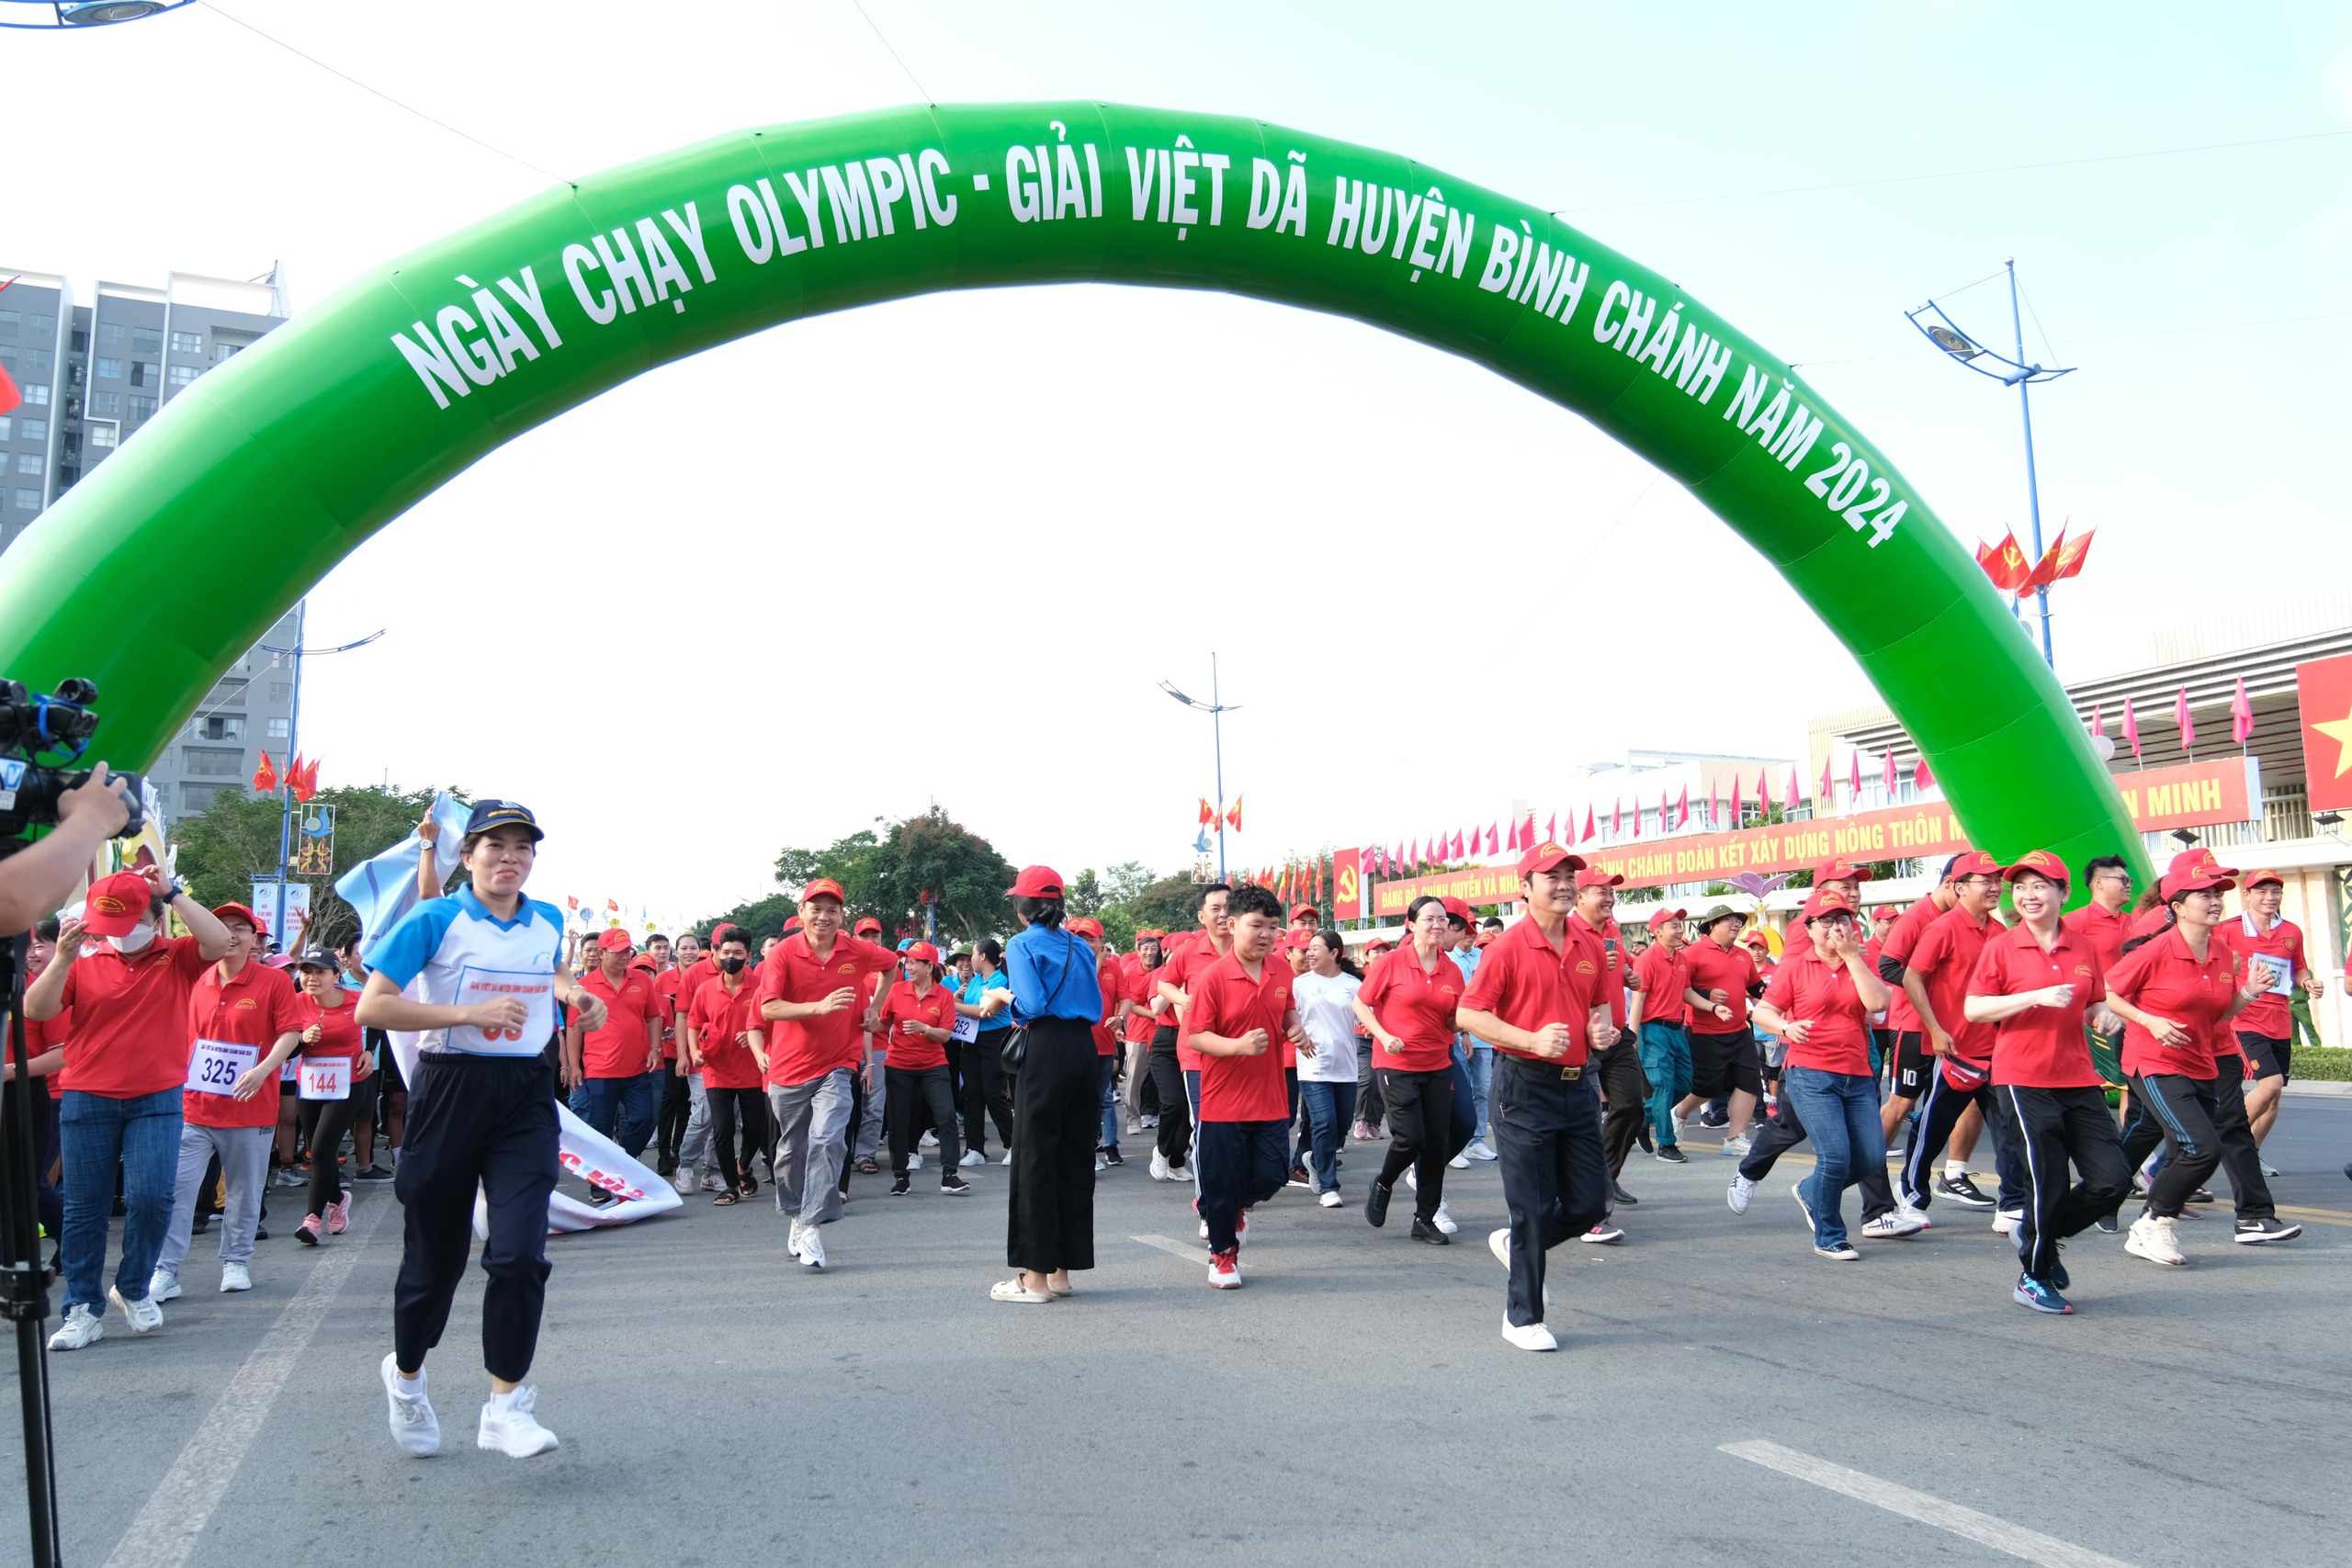 Huyện Bình Chánh: Hơn 2.500 VĐV tham gia ngày chạy Olympic vì sức khỏe toàn dân- Ảnh 2.